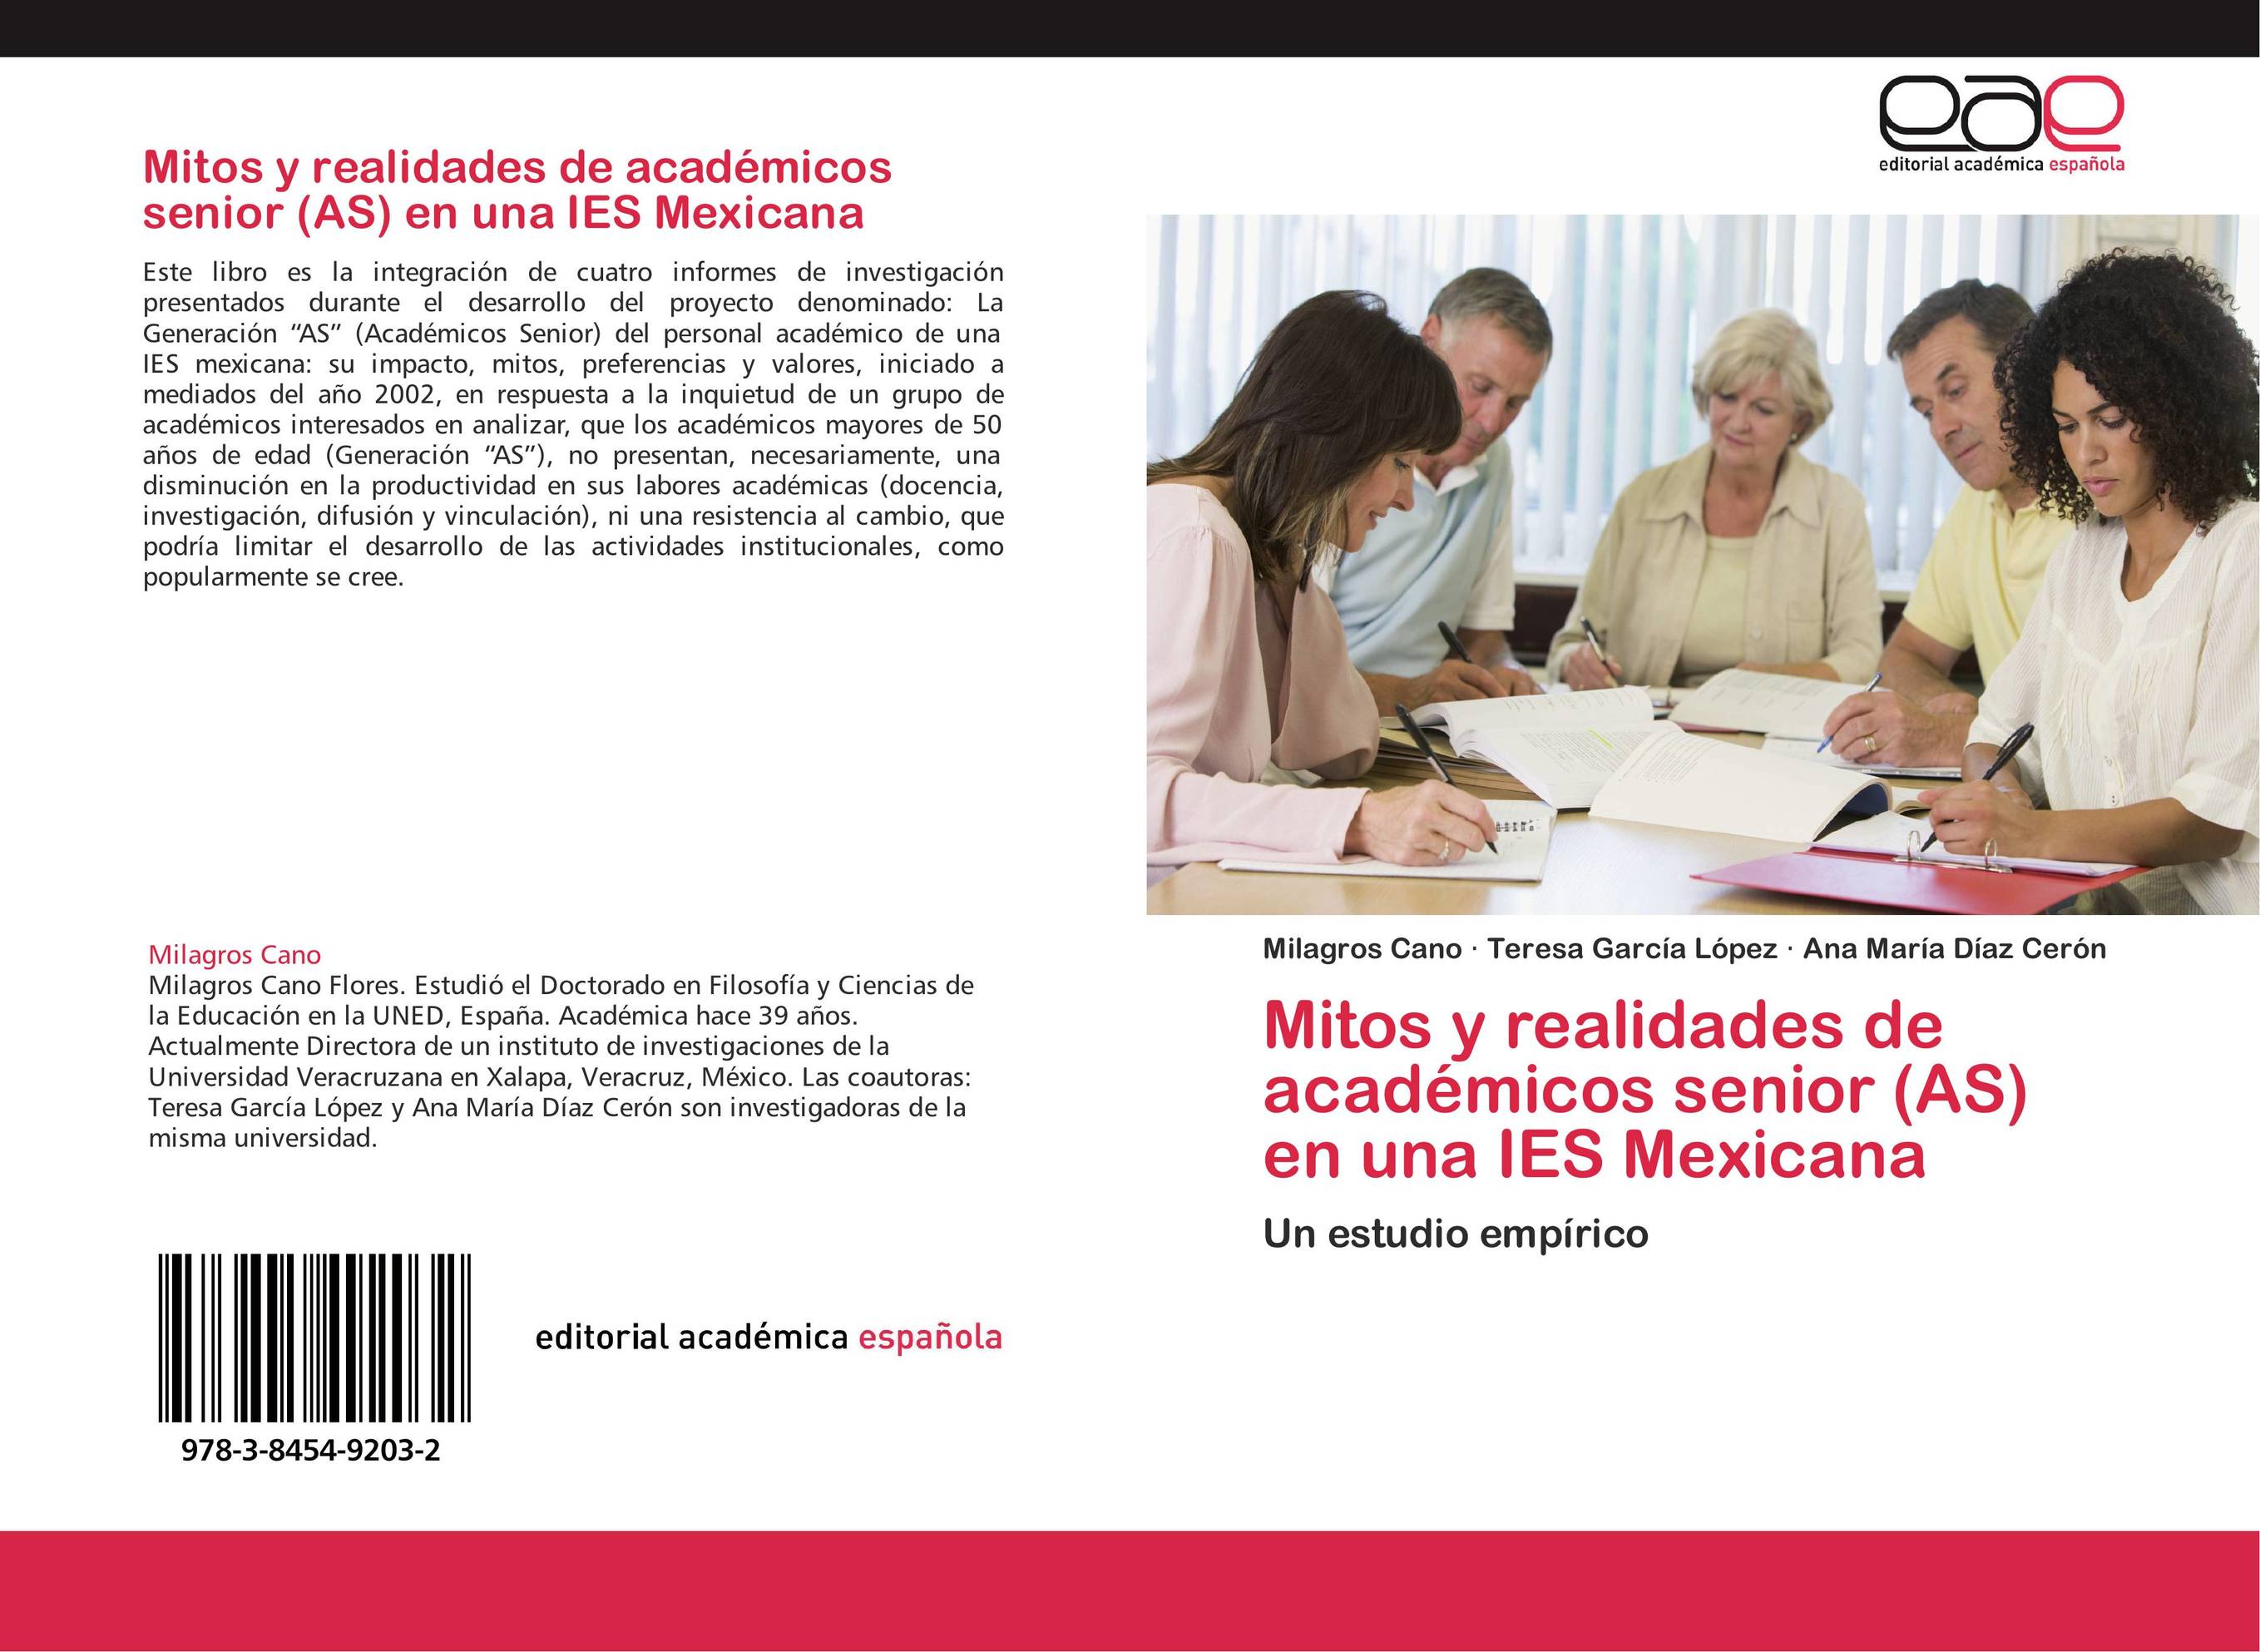 Mitos y realidades de académicos senior (AS) en una IES Mexicana